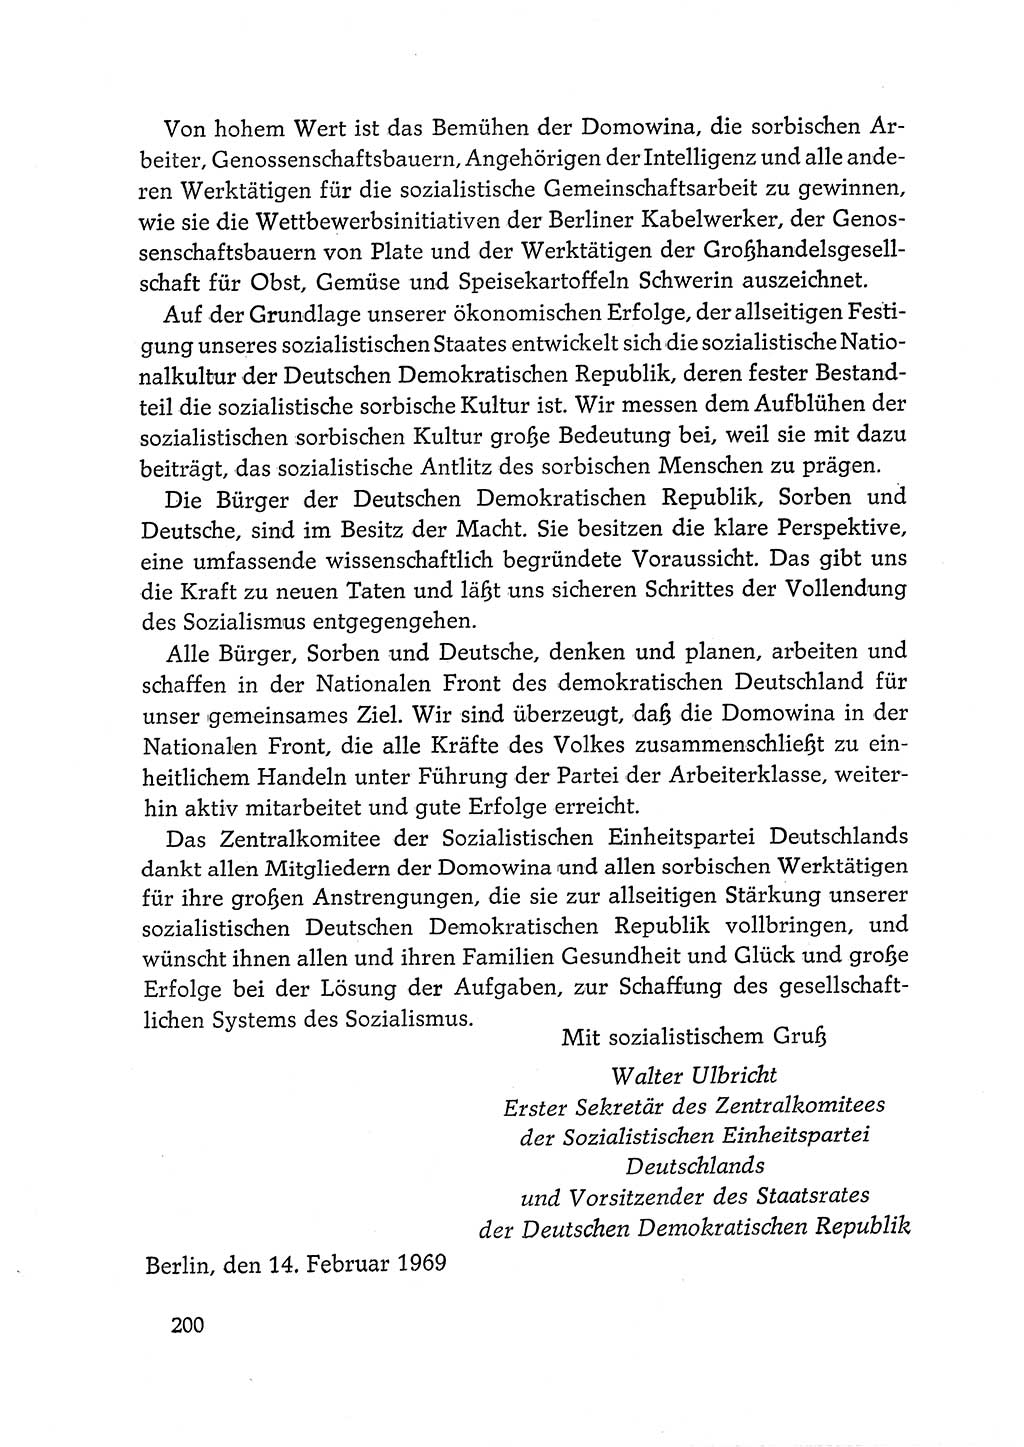 Dokumente der Sozialistischen Einheitspartei Deutschlands (SED) [Deutsche Demokratische Republik (DDR)] 1968-1969, Seite 200 (Dok. SED DDR 1968-1969, S. 200)